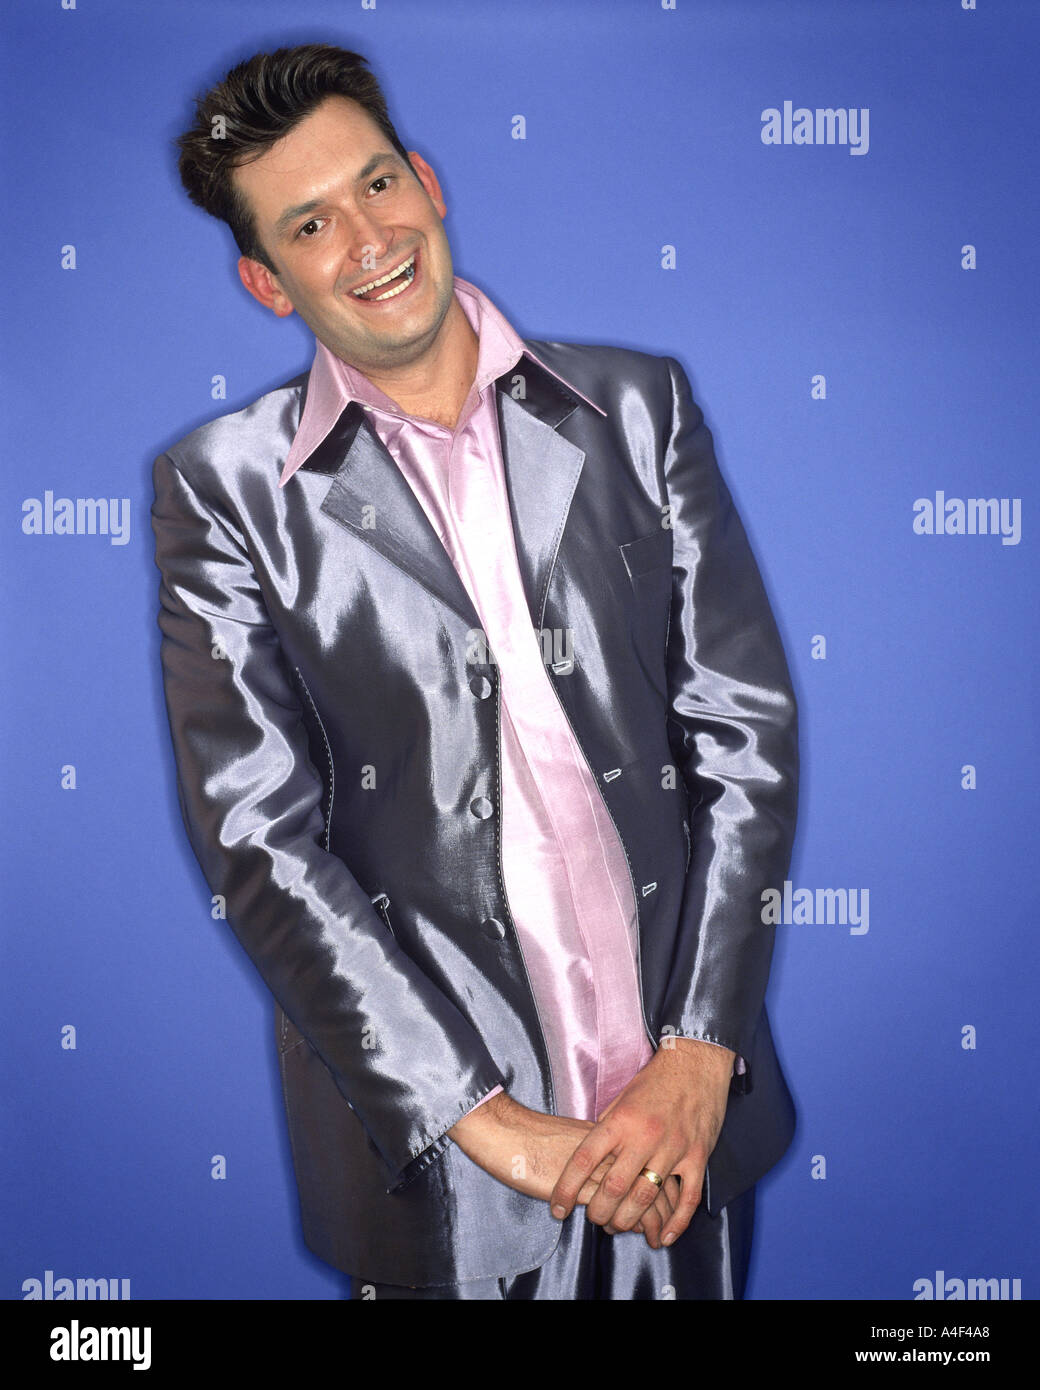 shiney suit Stock Photo